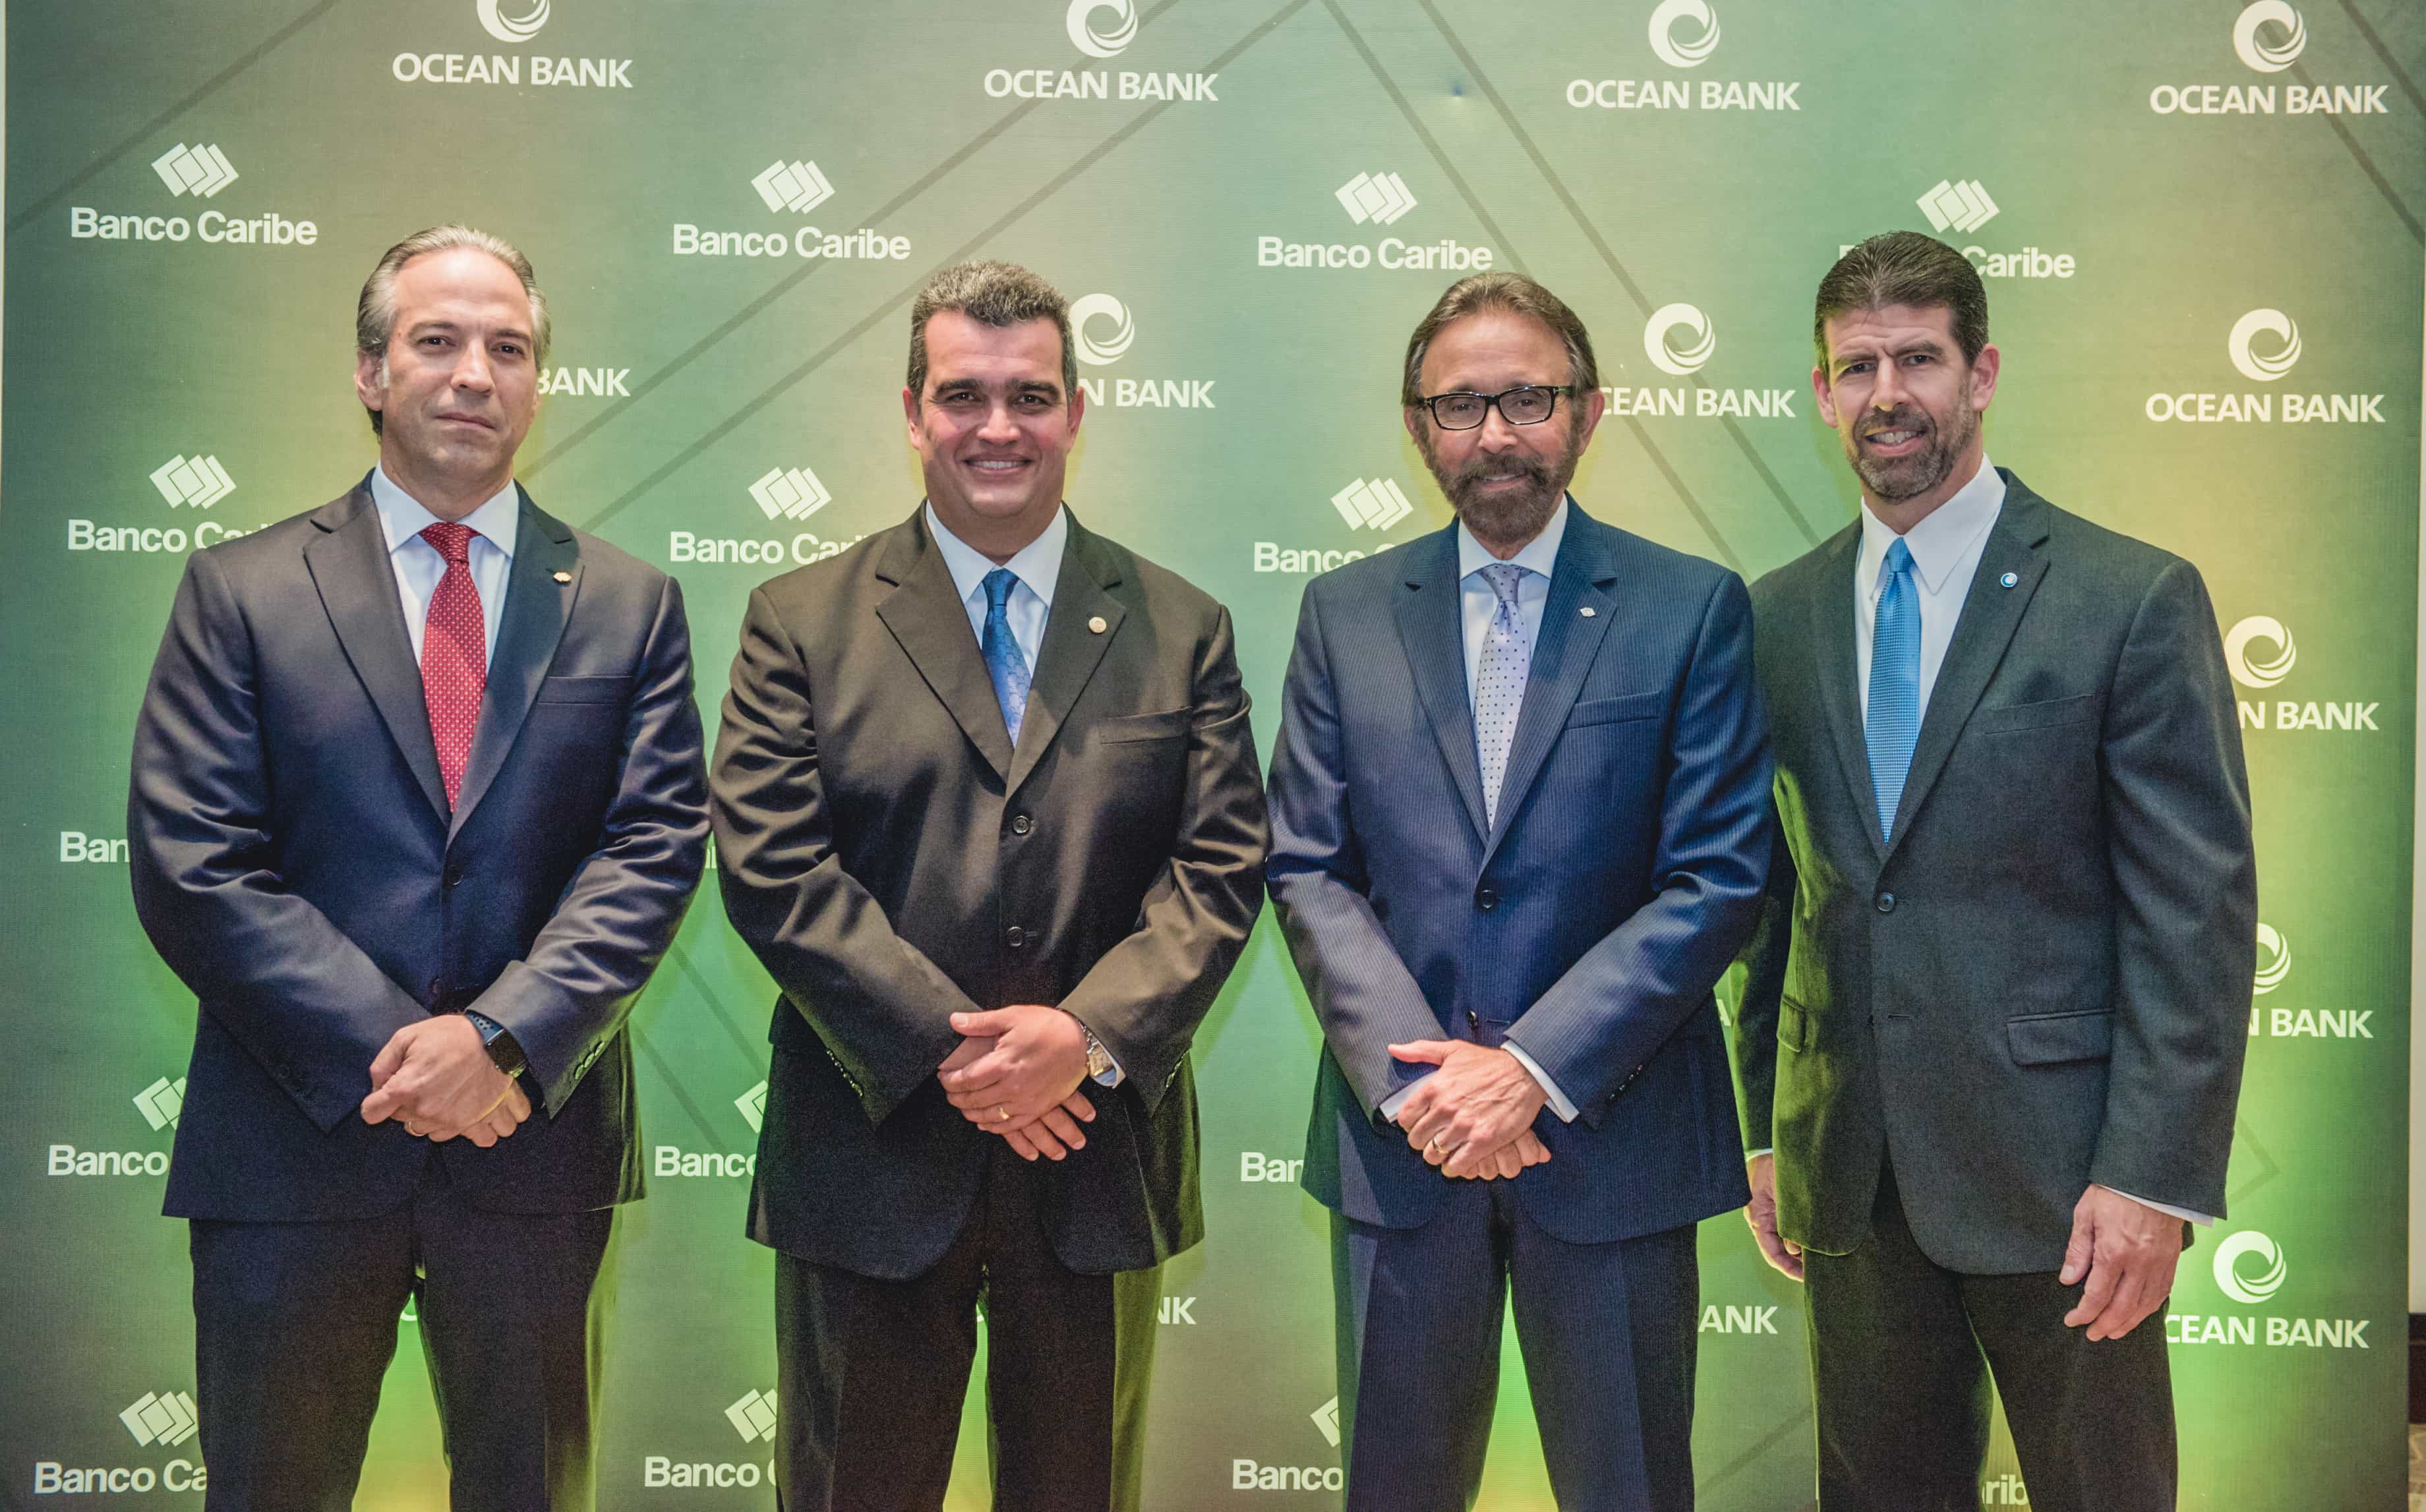 Imagen Banco Caribe y Ocean Bank presentan alianza beneficiará clientes